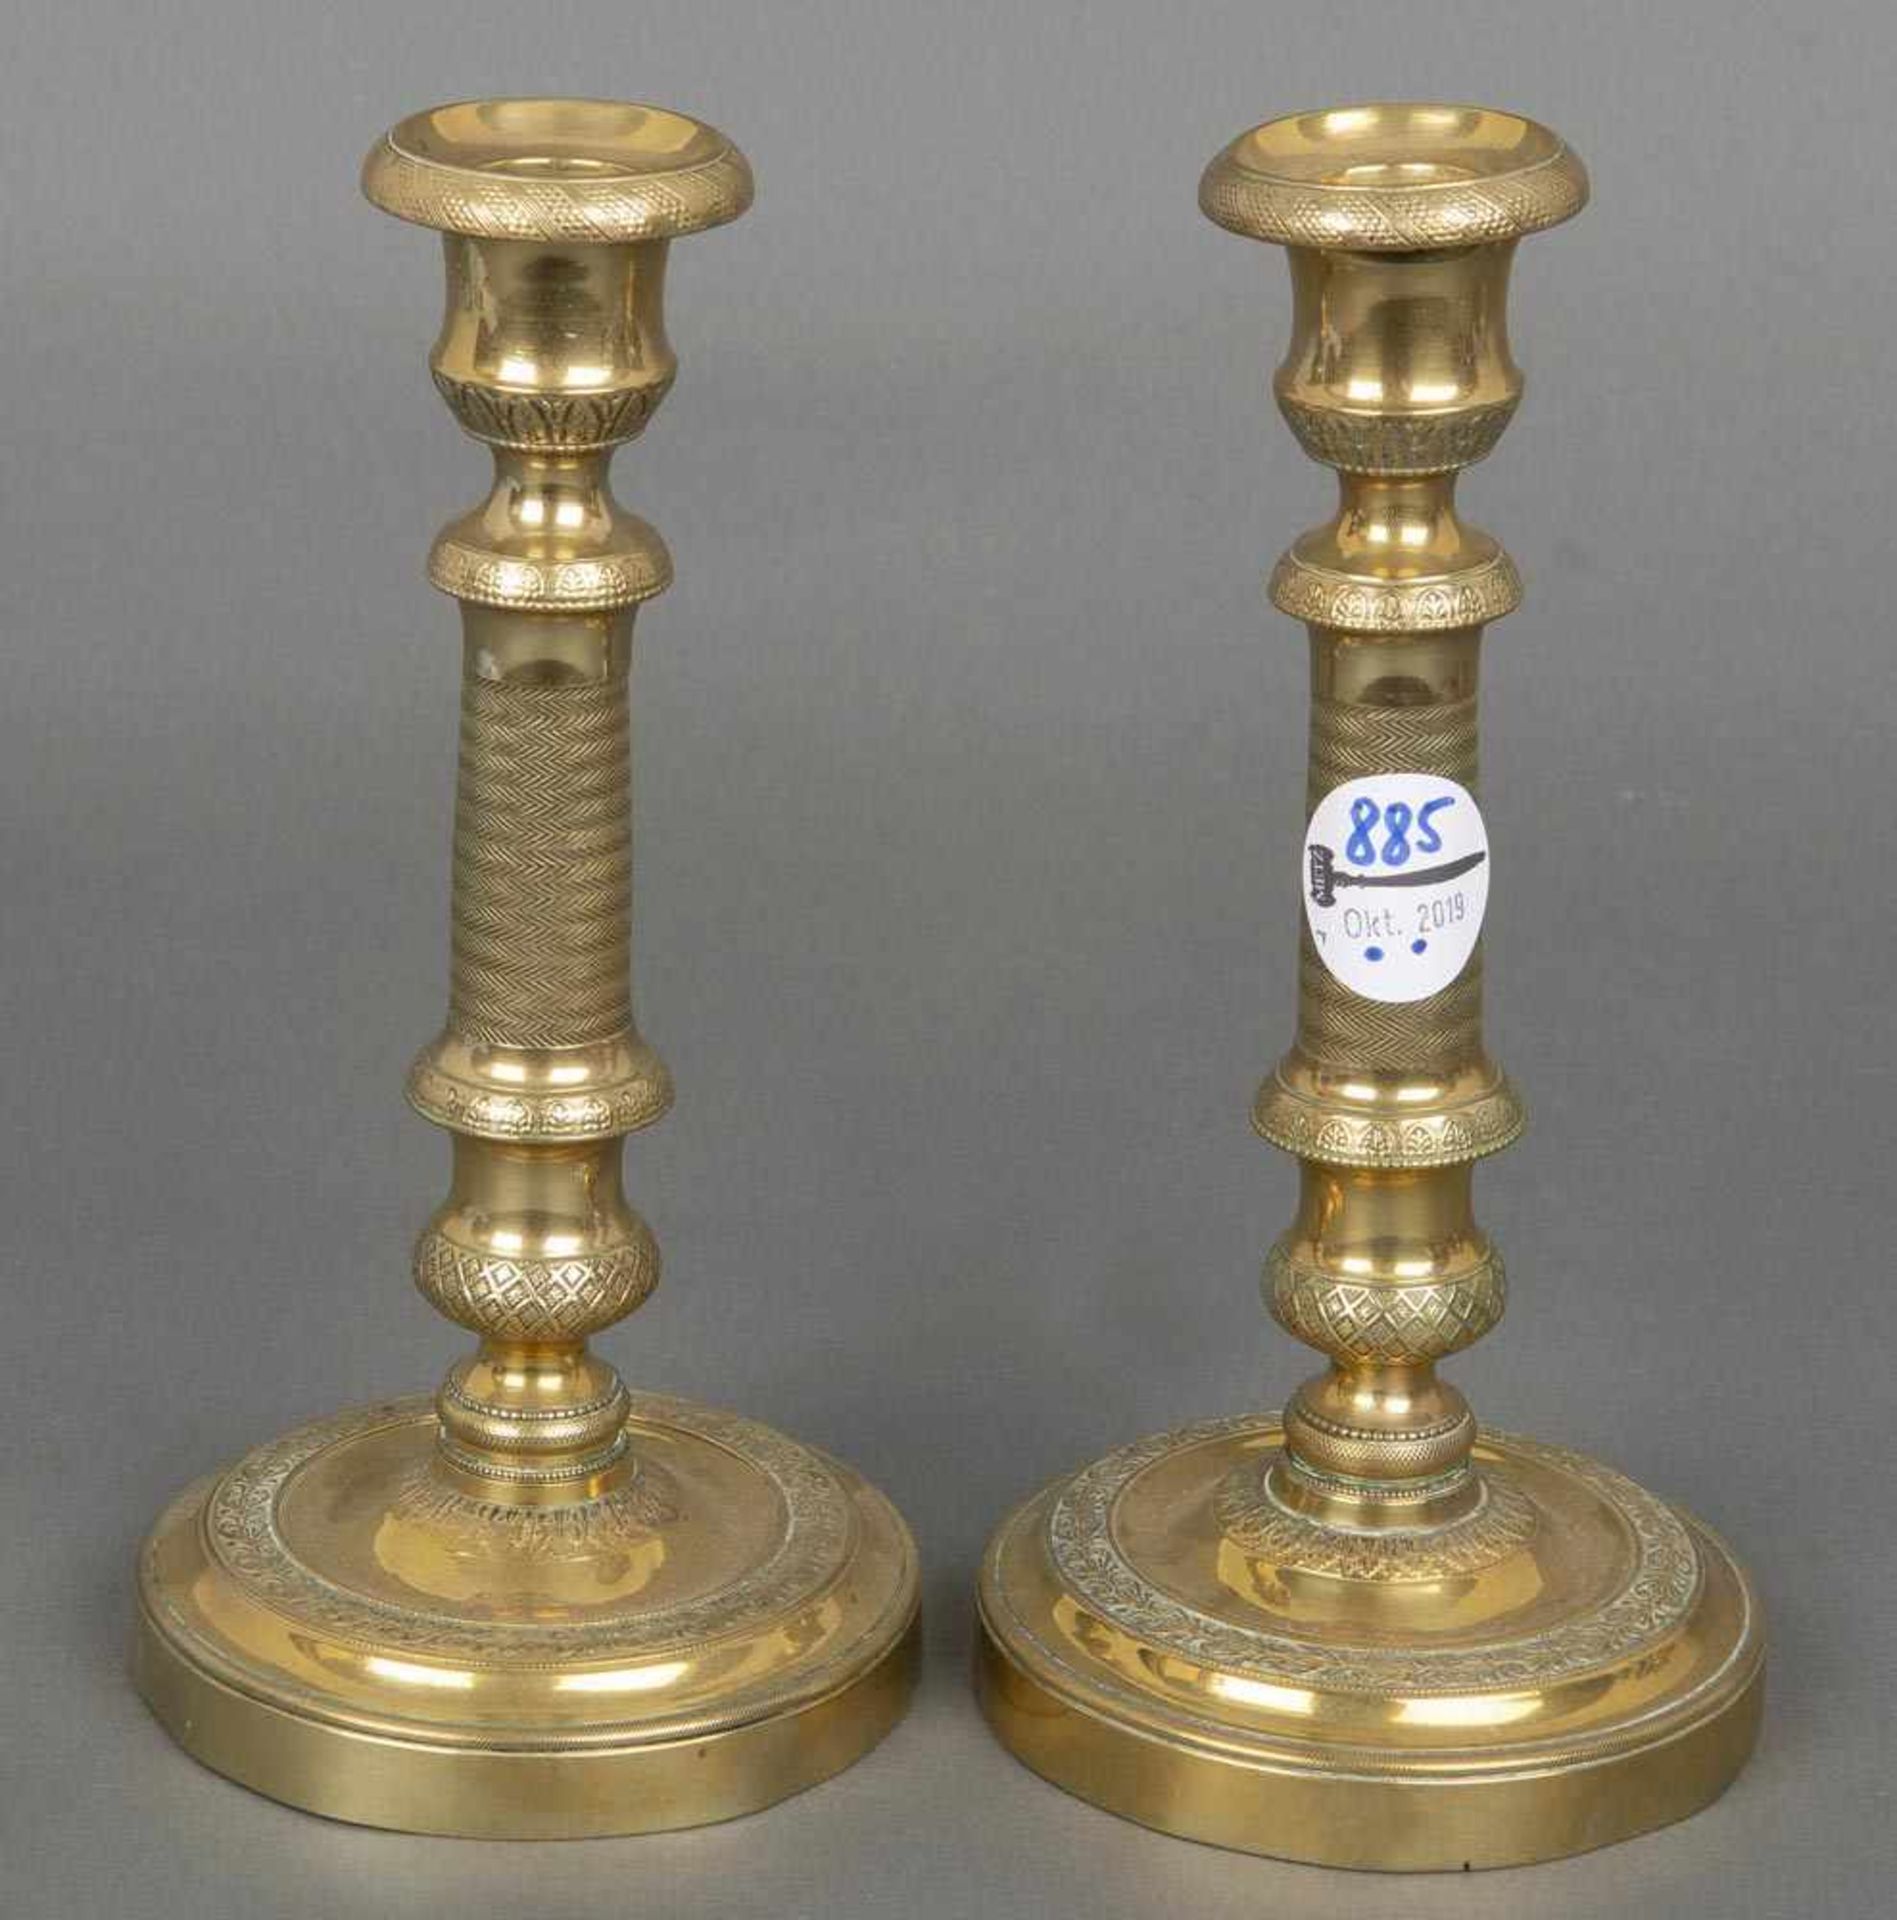 Paar Kerzenleuchter. Deutsch 19. Jh. Bronze, ziseliert, H=21,5 cm.- - -25.00 % buyer's premium on